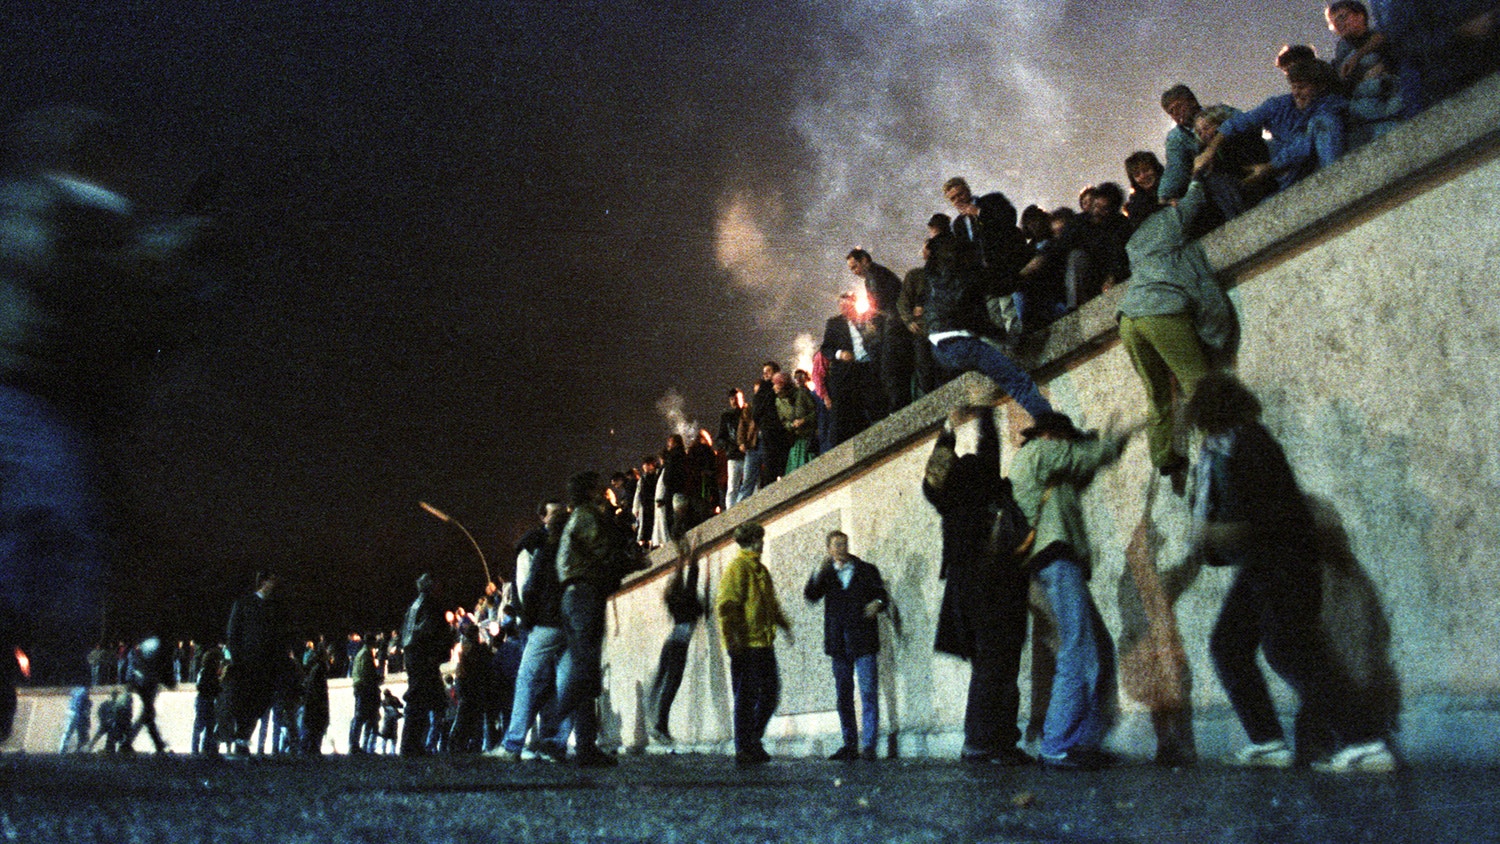  V&aacute;rias pessoas do lado ocidental sobem o Muro na porta Brandemburgo, depois do an&uacute;ncio da abertura da fronteira. 9 de novembro de 1989 | Herbert Knosowsk - Reuters 